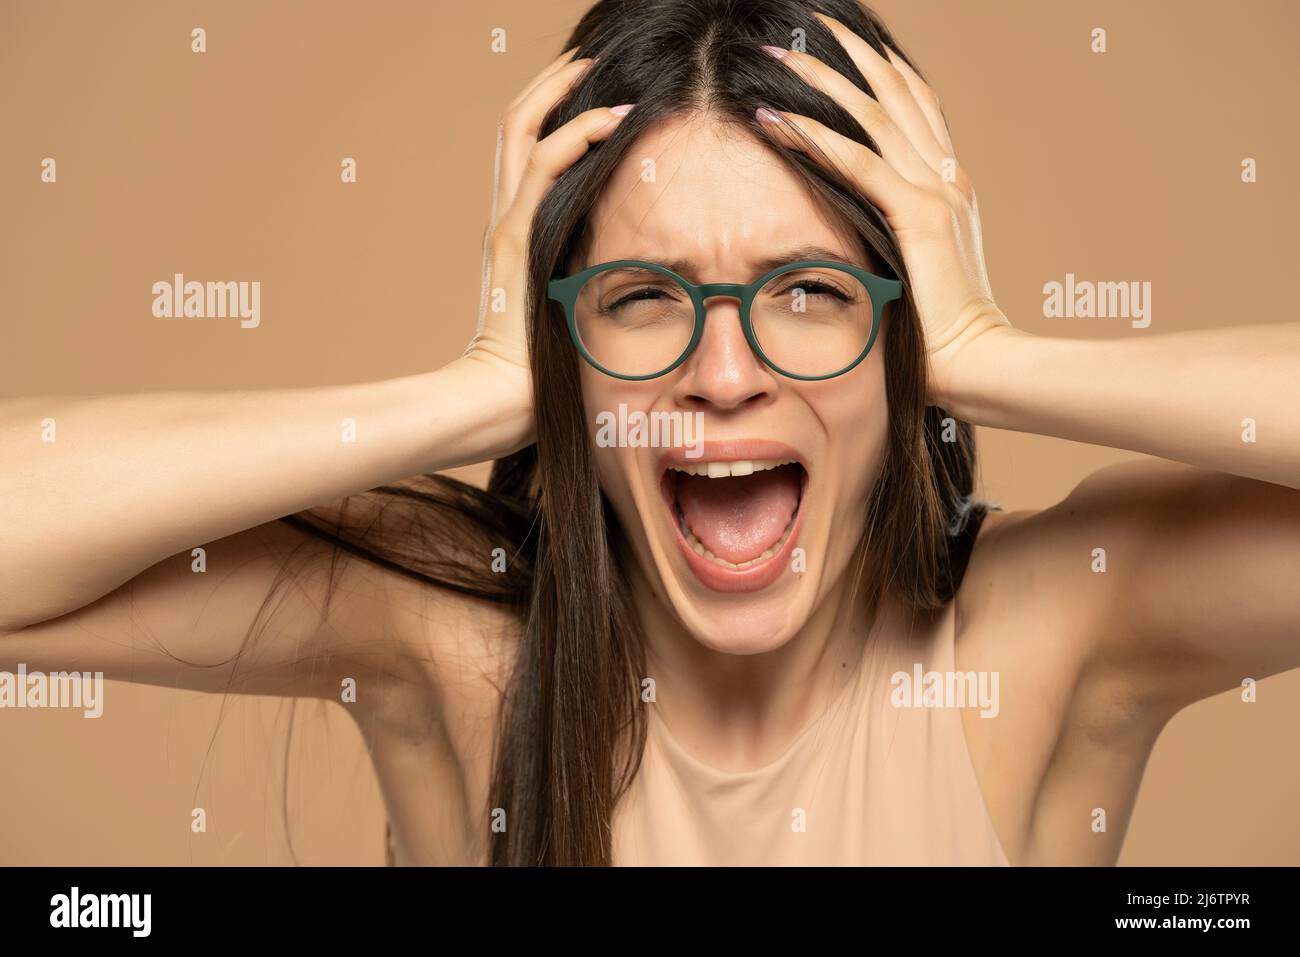 Nahaufnahme Porträt gestresst frustriert Frau mit Brillen Schreien isoliert auf beigem Hintergrund. Negative Gesichtsexpression des menschlichen Gefühls Reaktion A Stockfoto